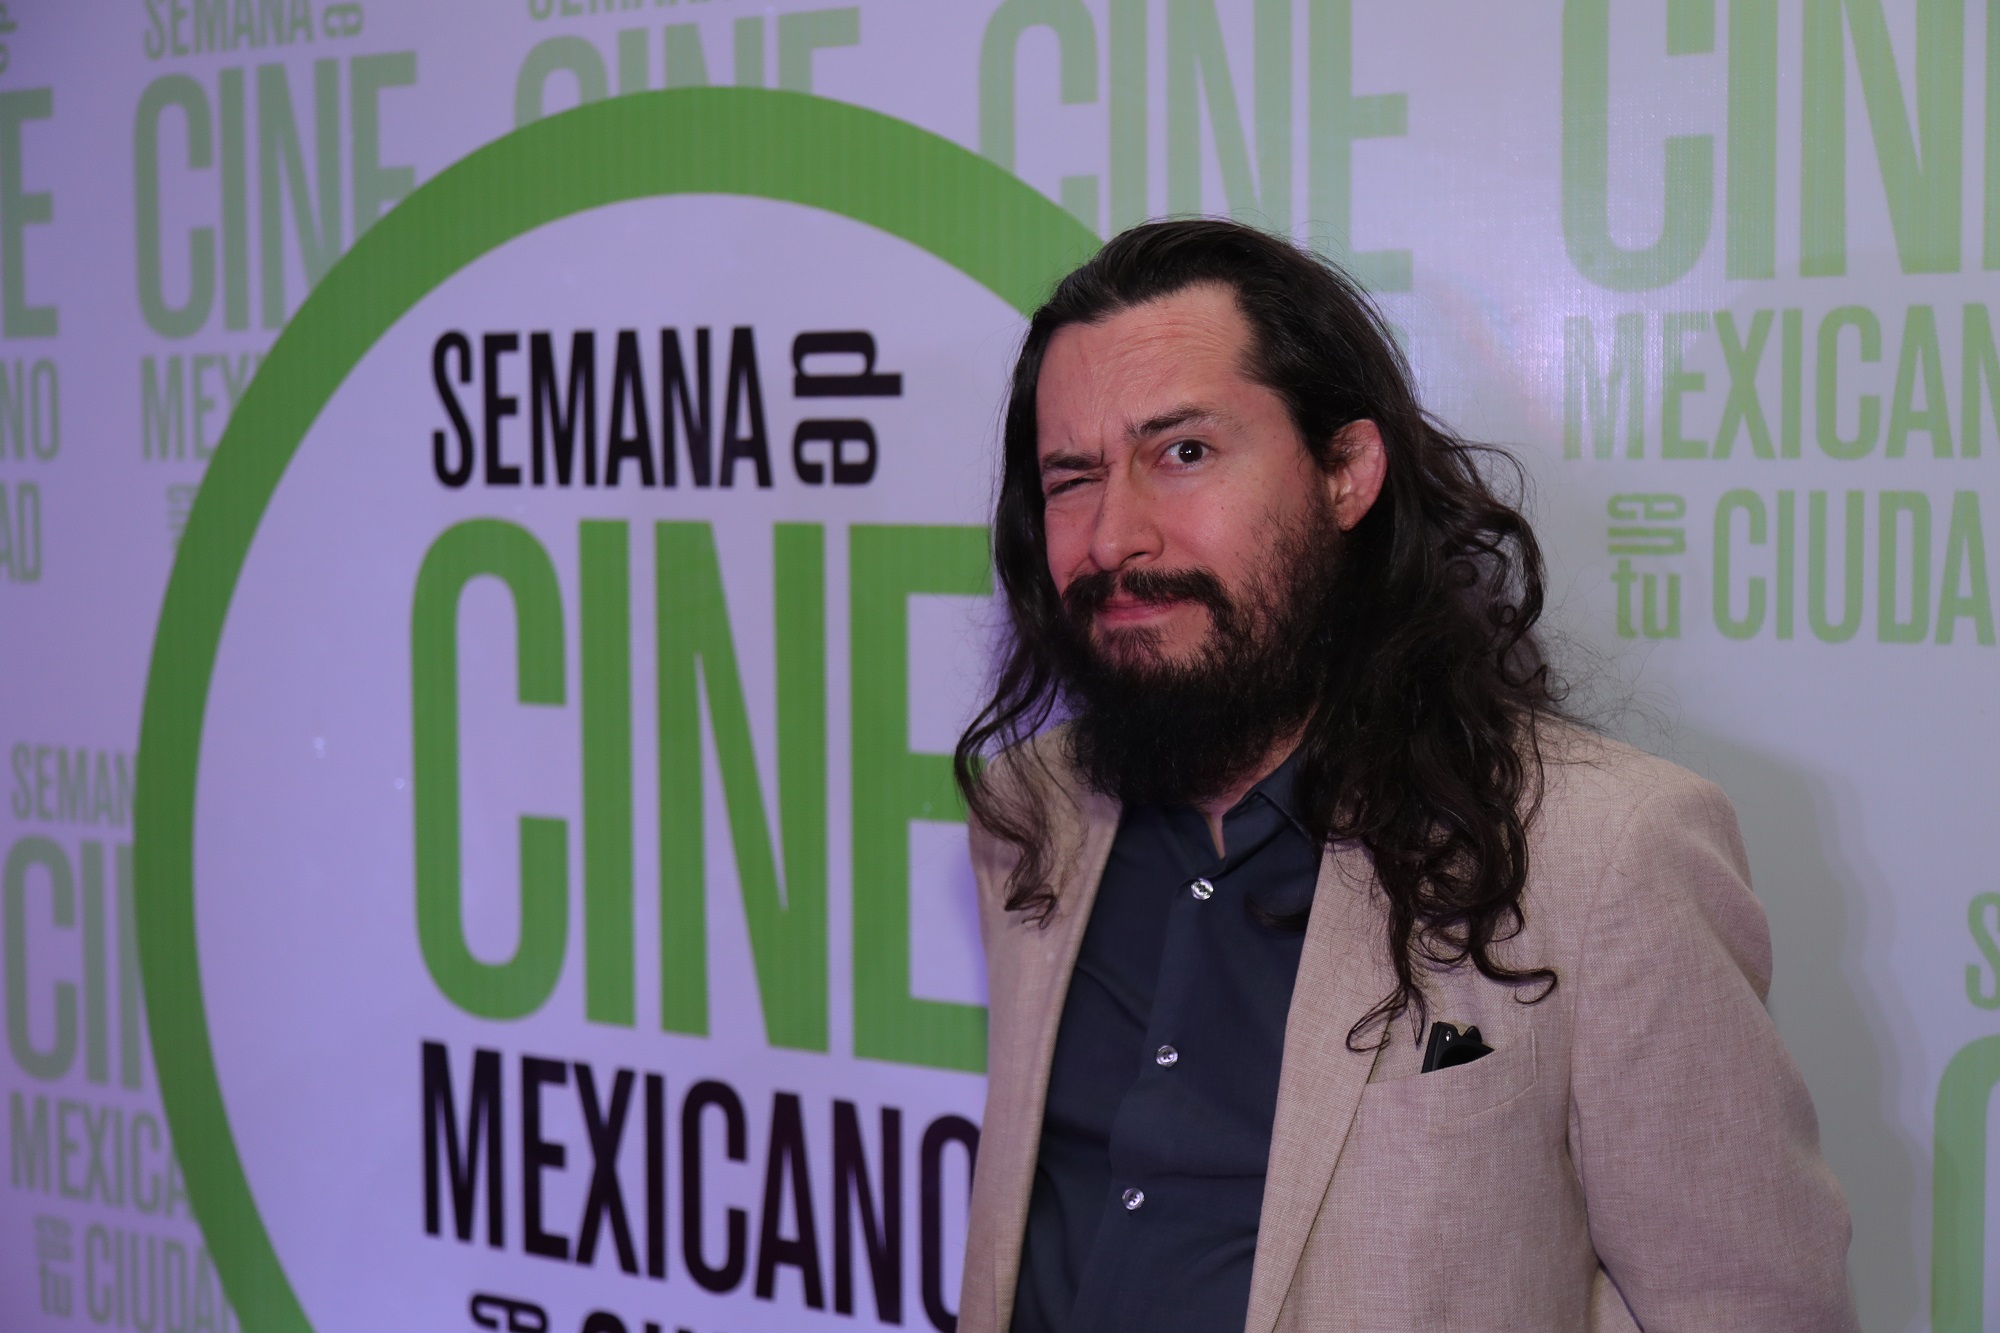 Semana de Cine Mexicano para los aficionados al séptimo arte